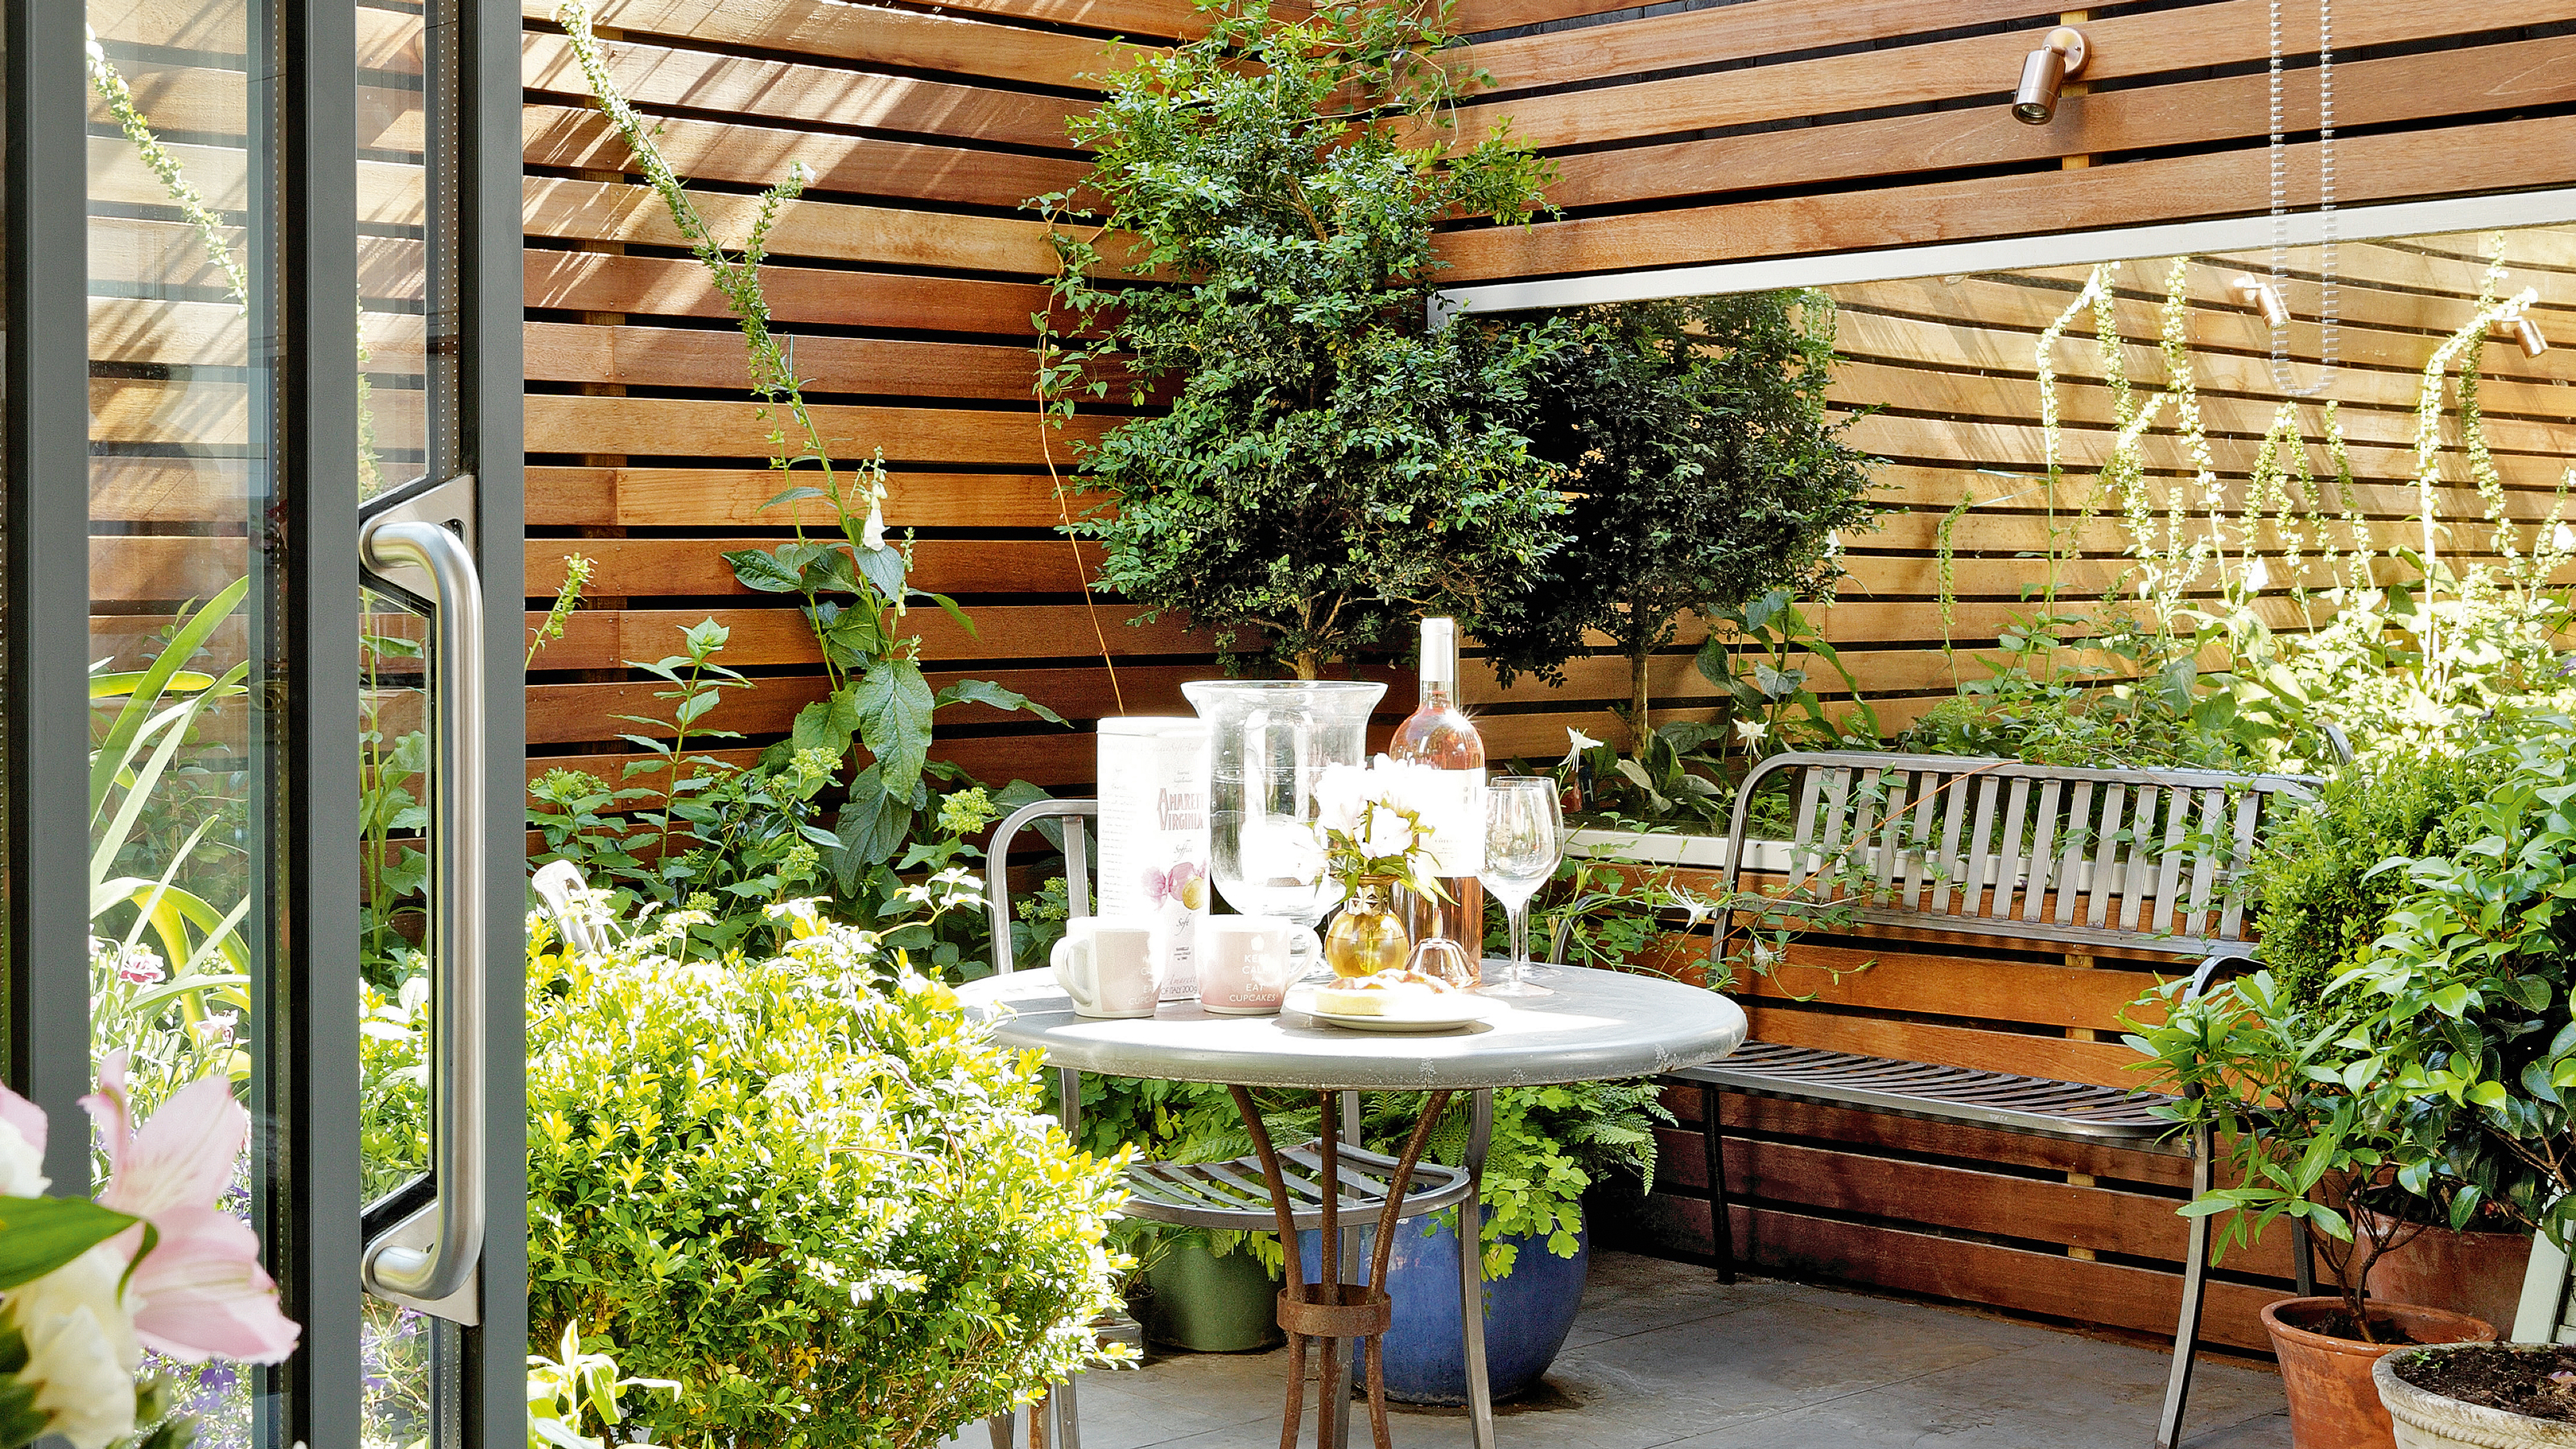 Courtyard garden ideas   20 ways to create a hidden paradise ...